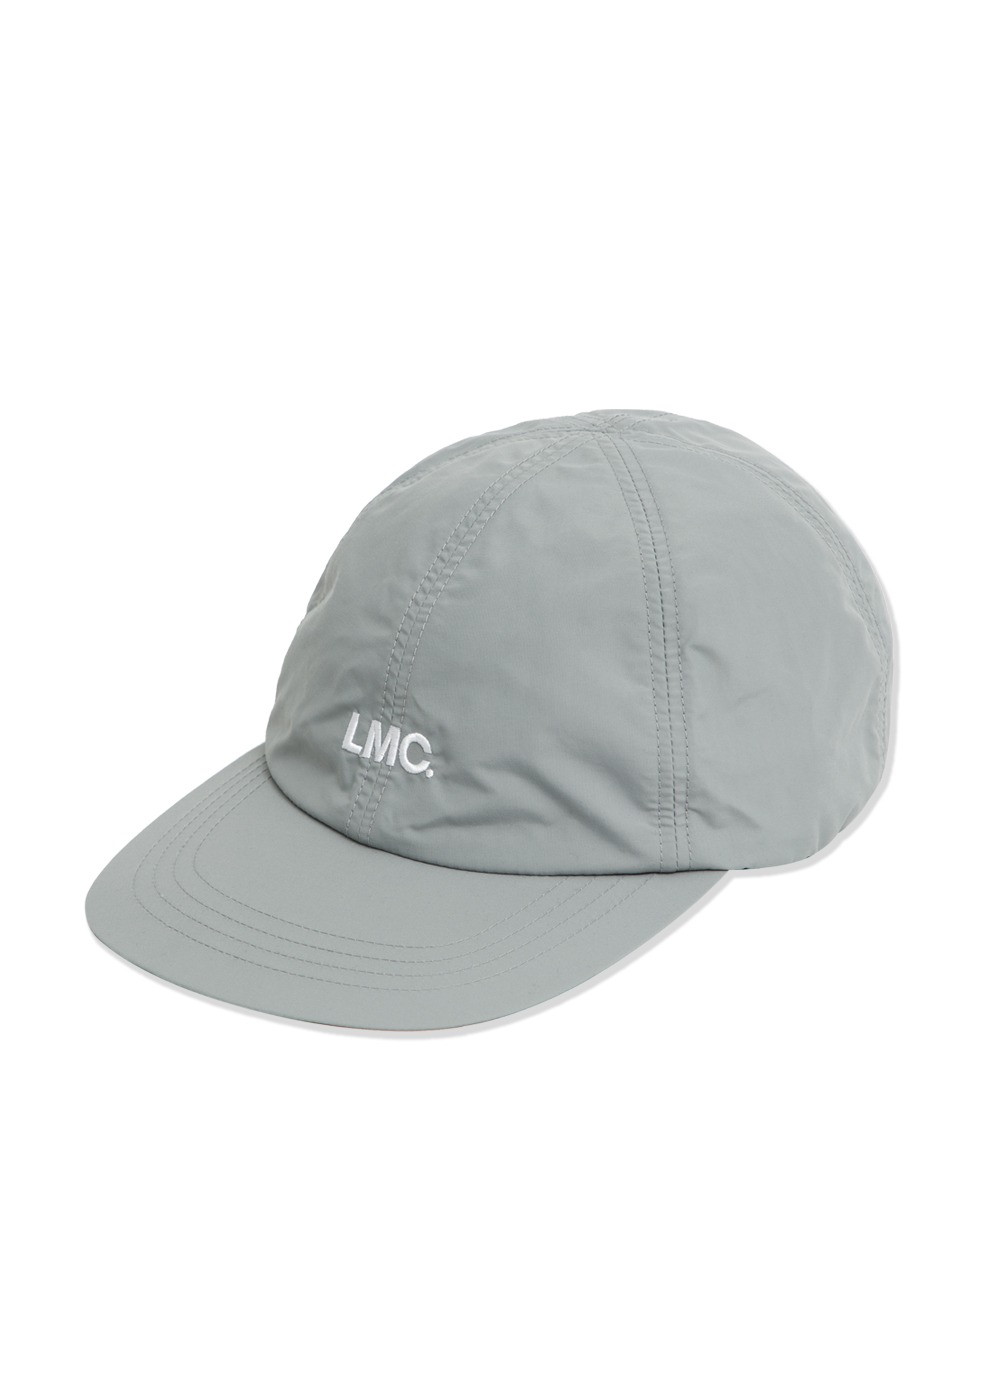 LMC NYLON OG 6 PANEL CAP gray